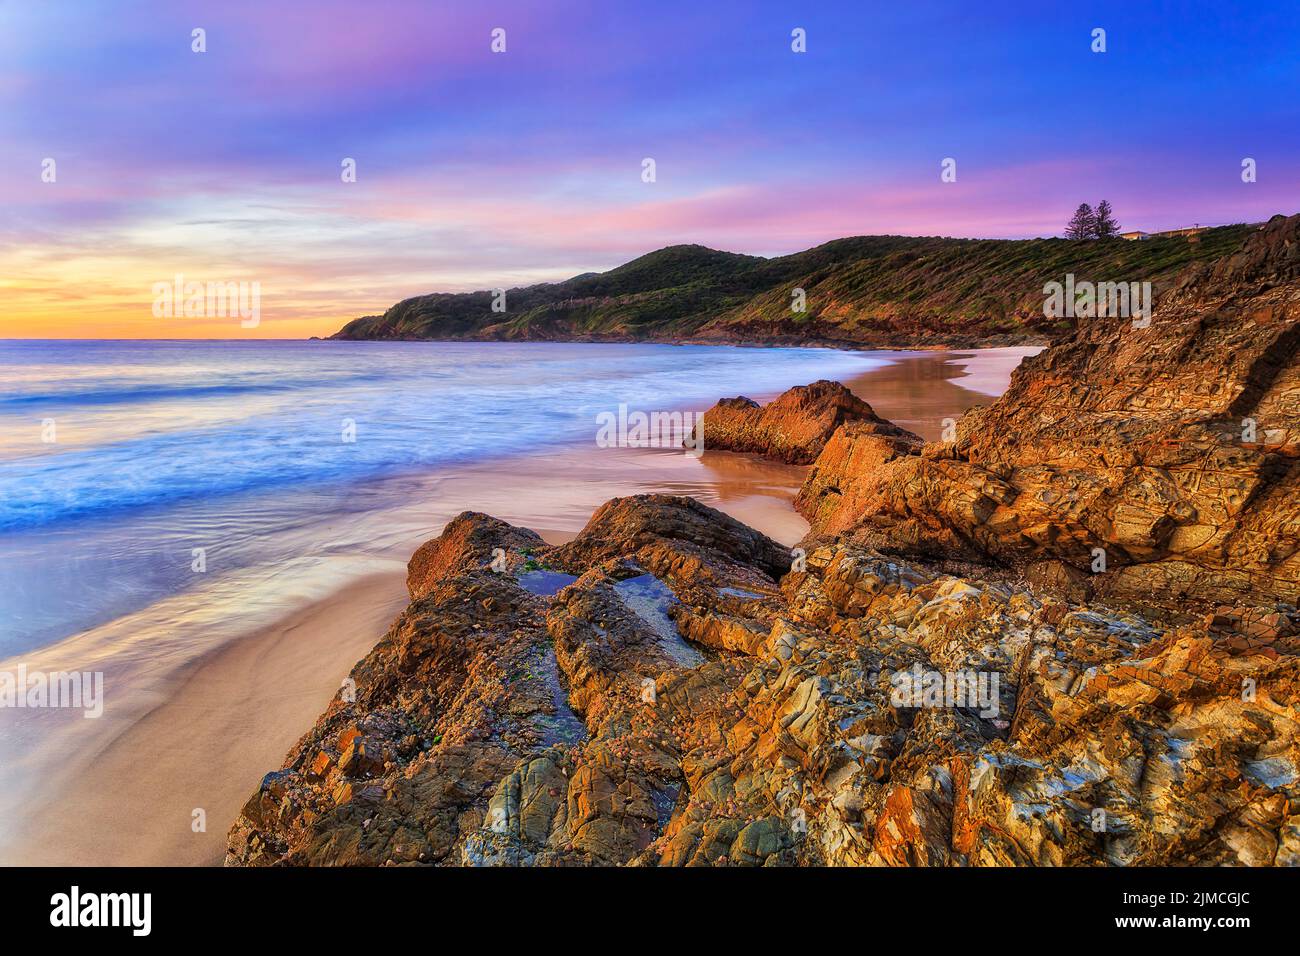 hawke cape et promontoire depuis la plage de burgess, dans la ville de Forster, sur la côte Pacifique de l'Australie, à l'aube pittoresque d'un paysage marin. Banque D'Images